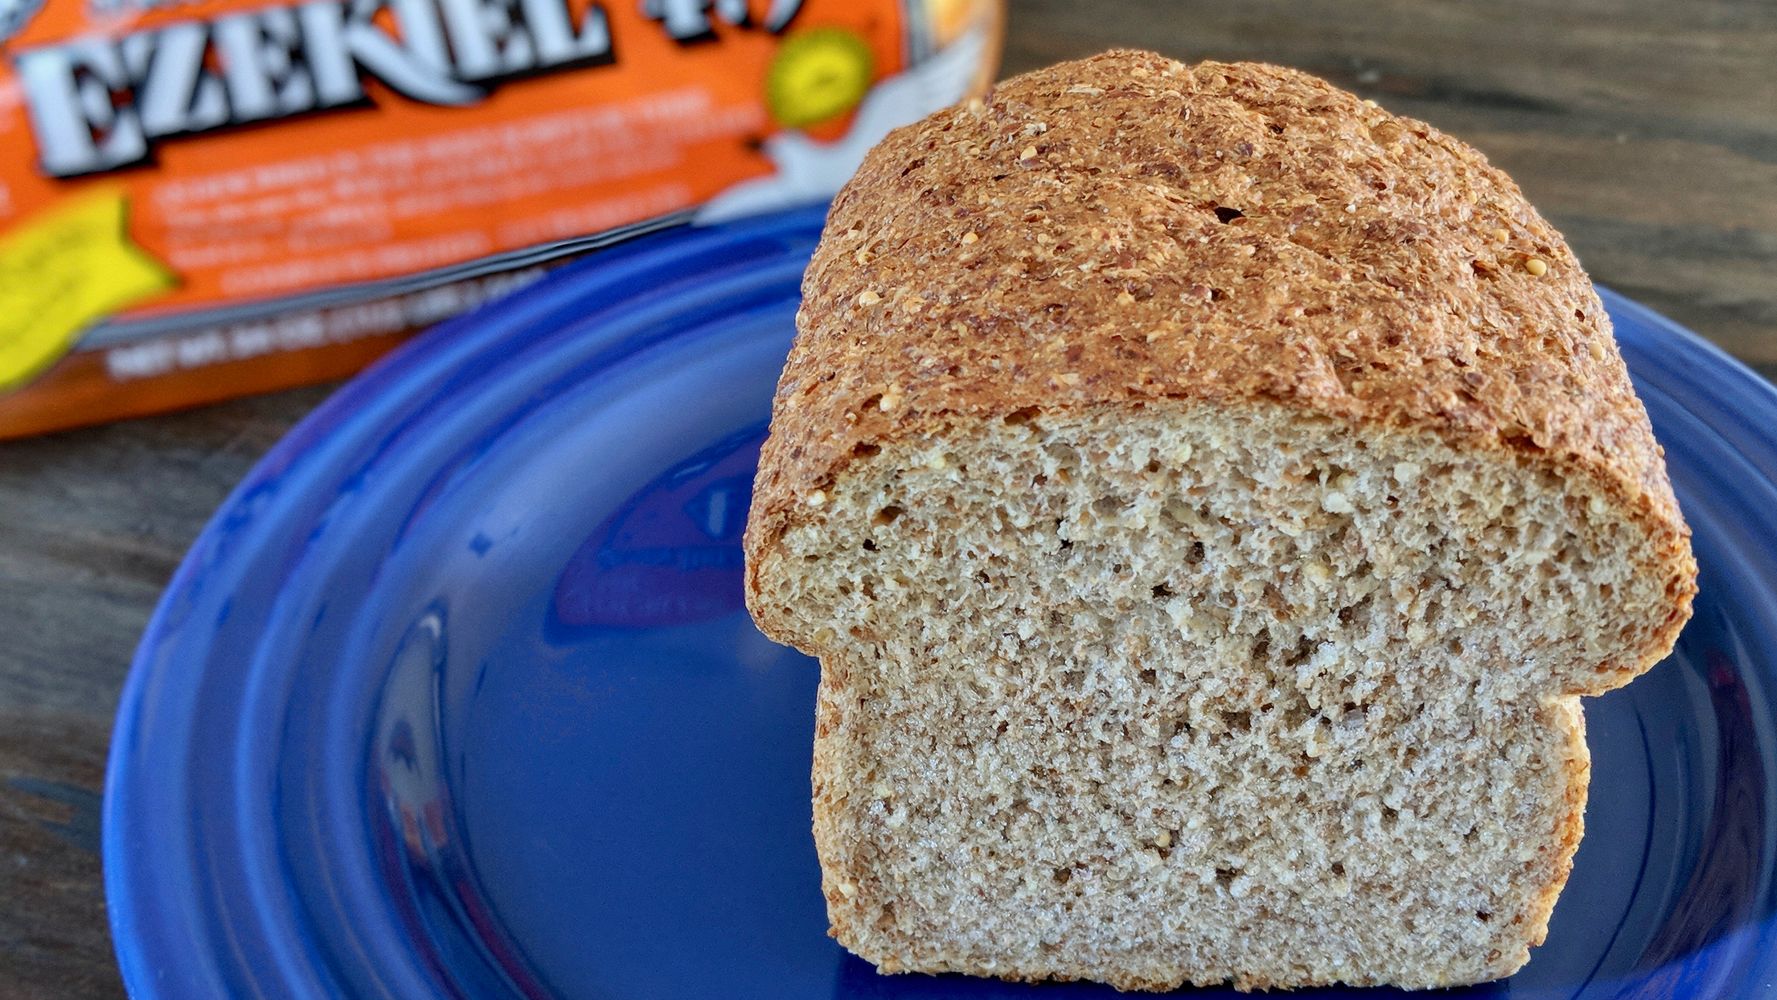 Bánh mì Ezekiel chứa một số loại ngũ cốc và các loại đậu khác nhau như lúa mì, kê, lúa mạch, lúa mạch đen, đậu nành, đậu lăng... nên rất tốt cho sức khỏe.